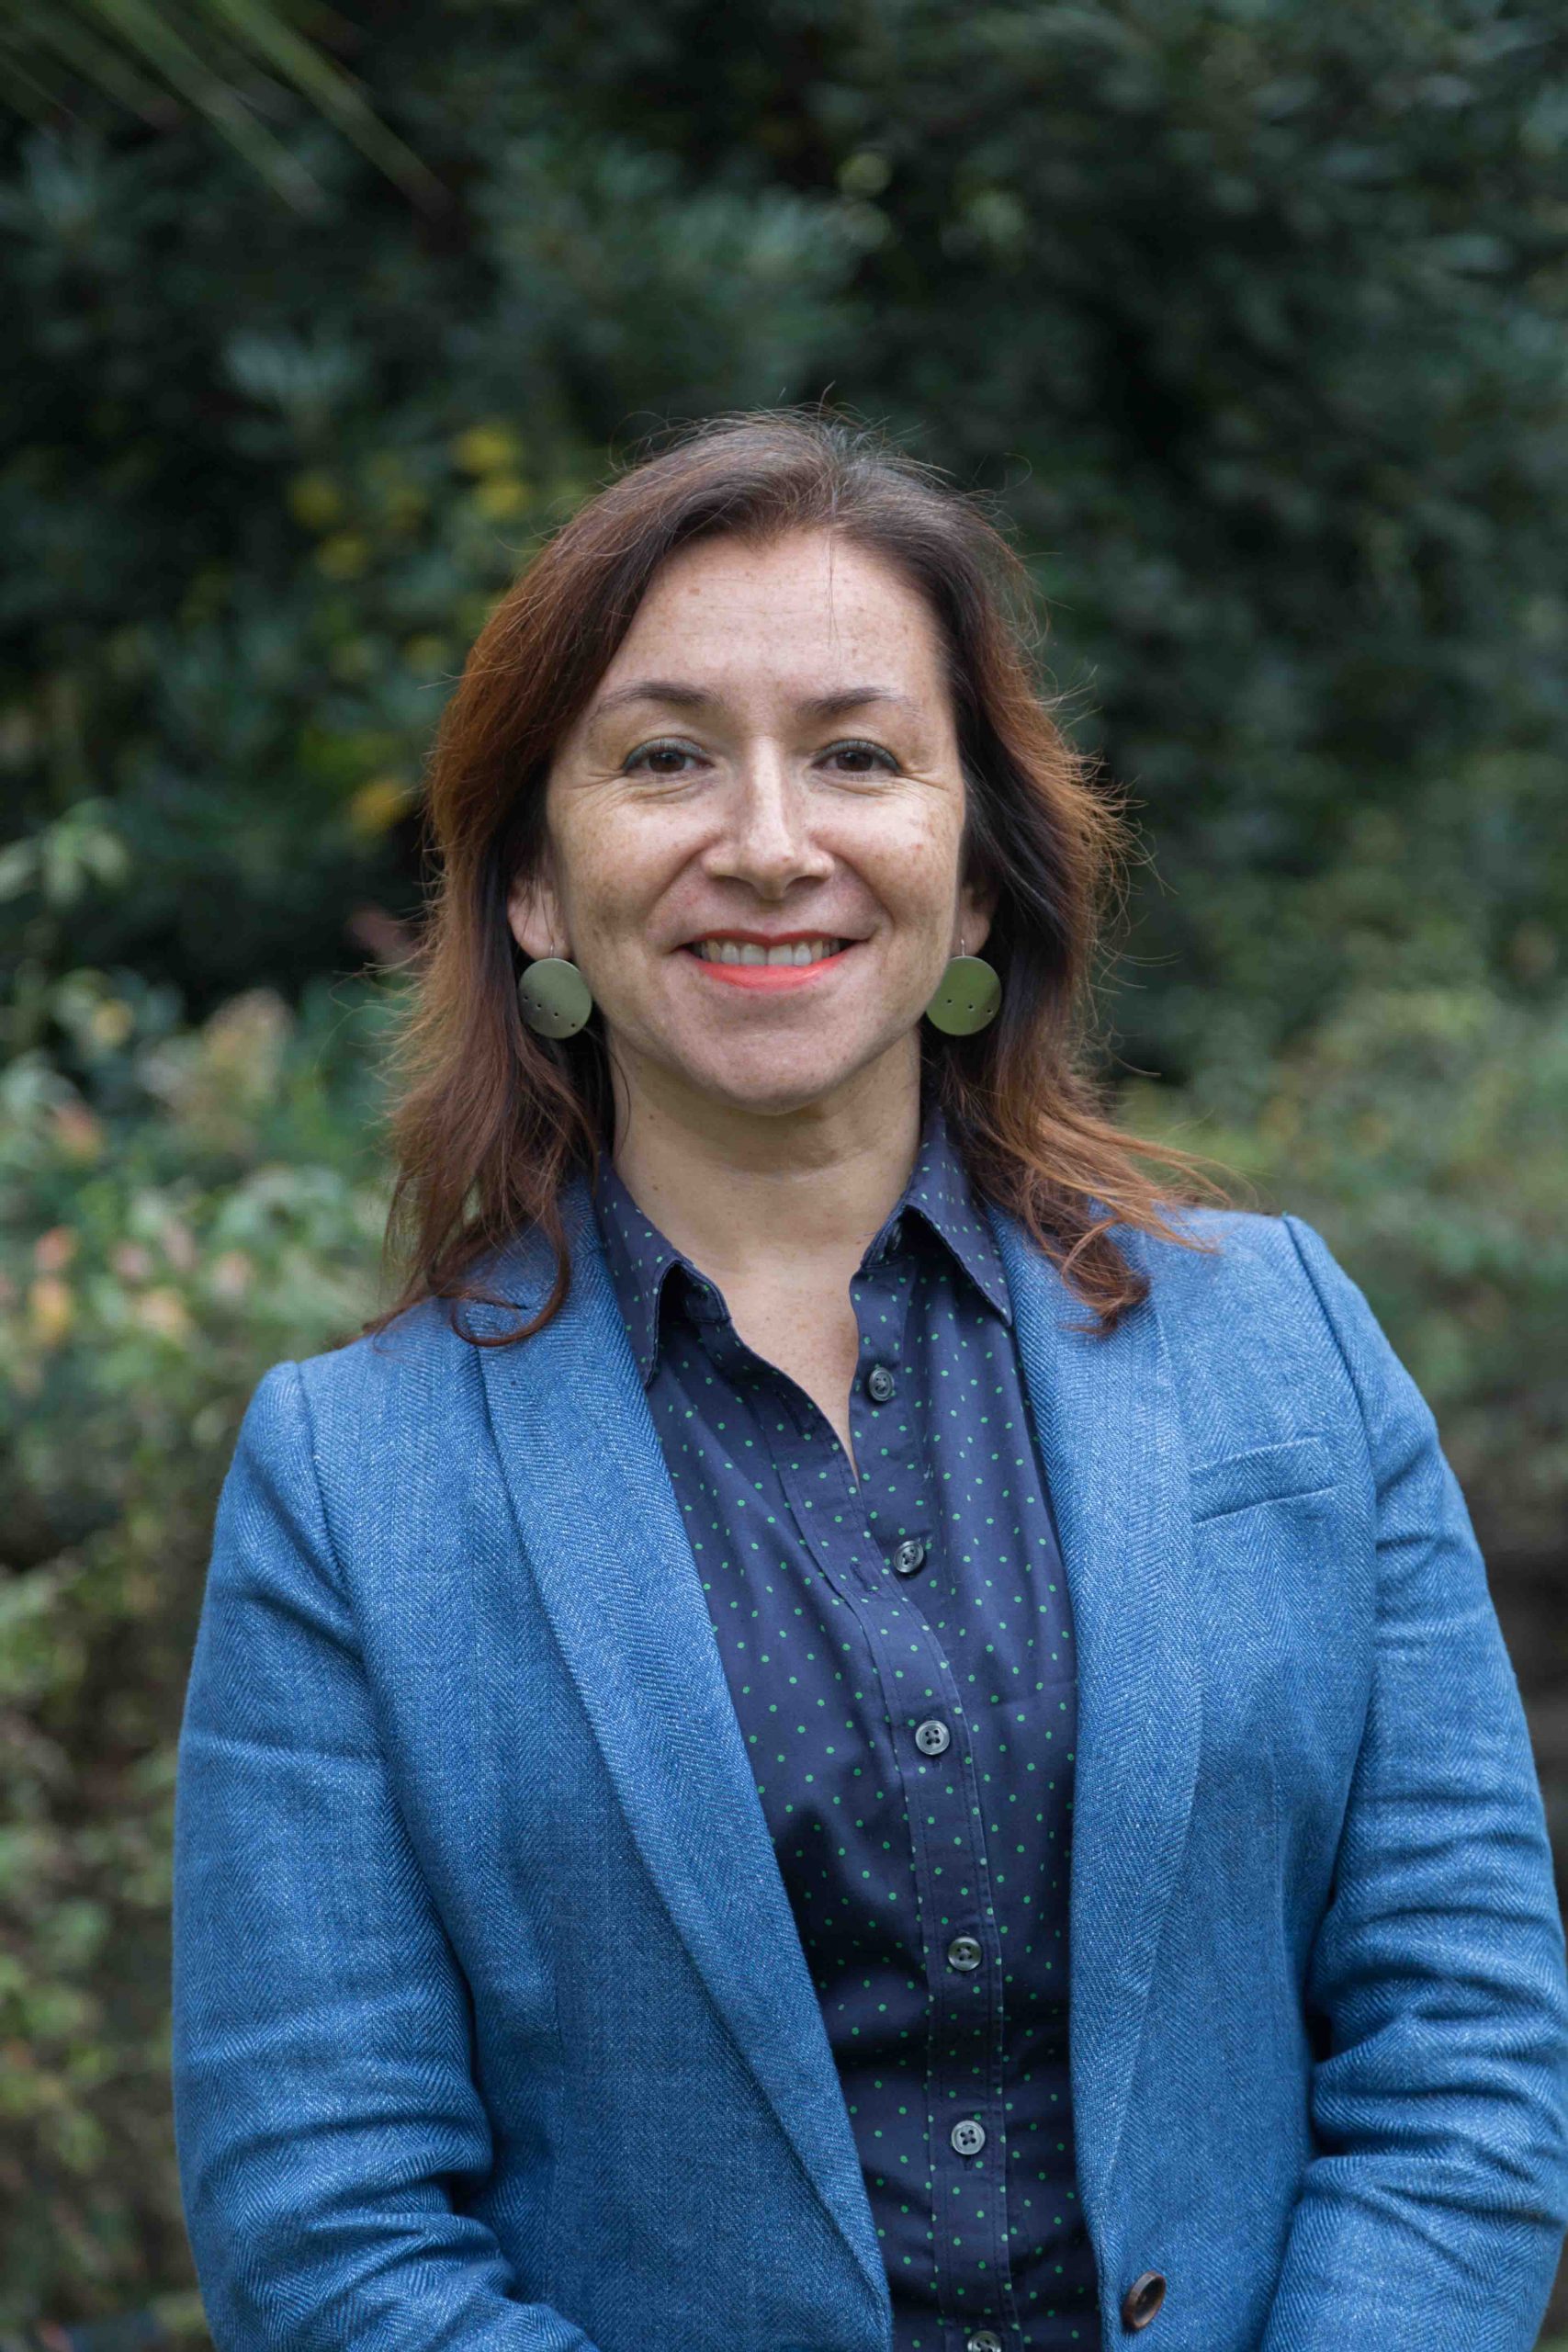 Profesora María Luisa Méndez en radio T13: “La precariedad del mercado laboral afecta de manera bien particular a la población más joven”